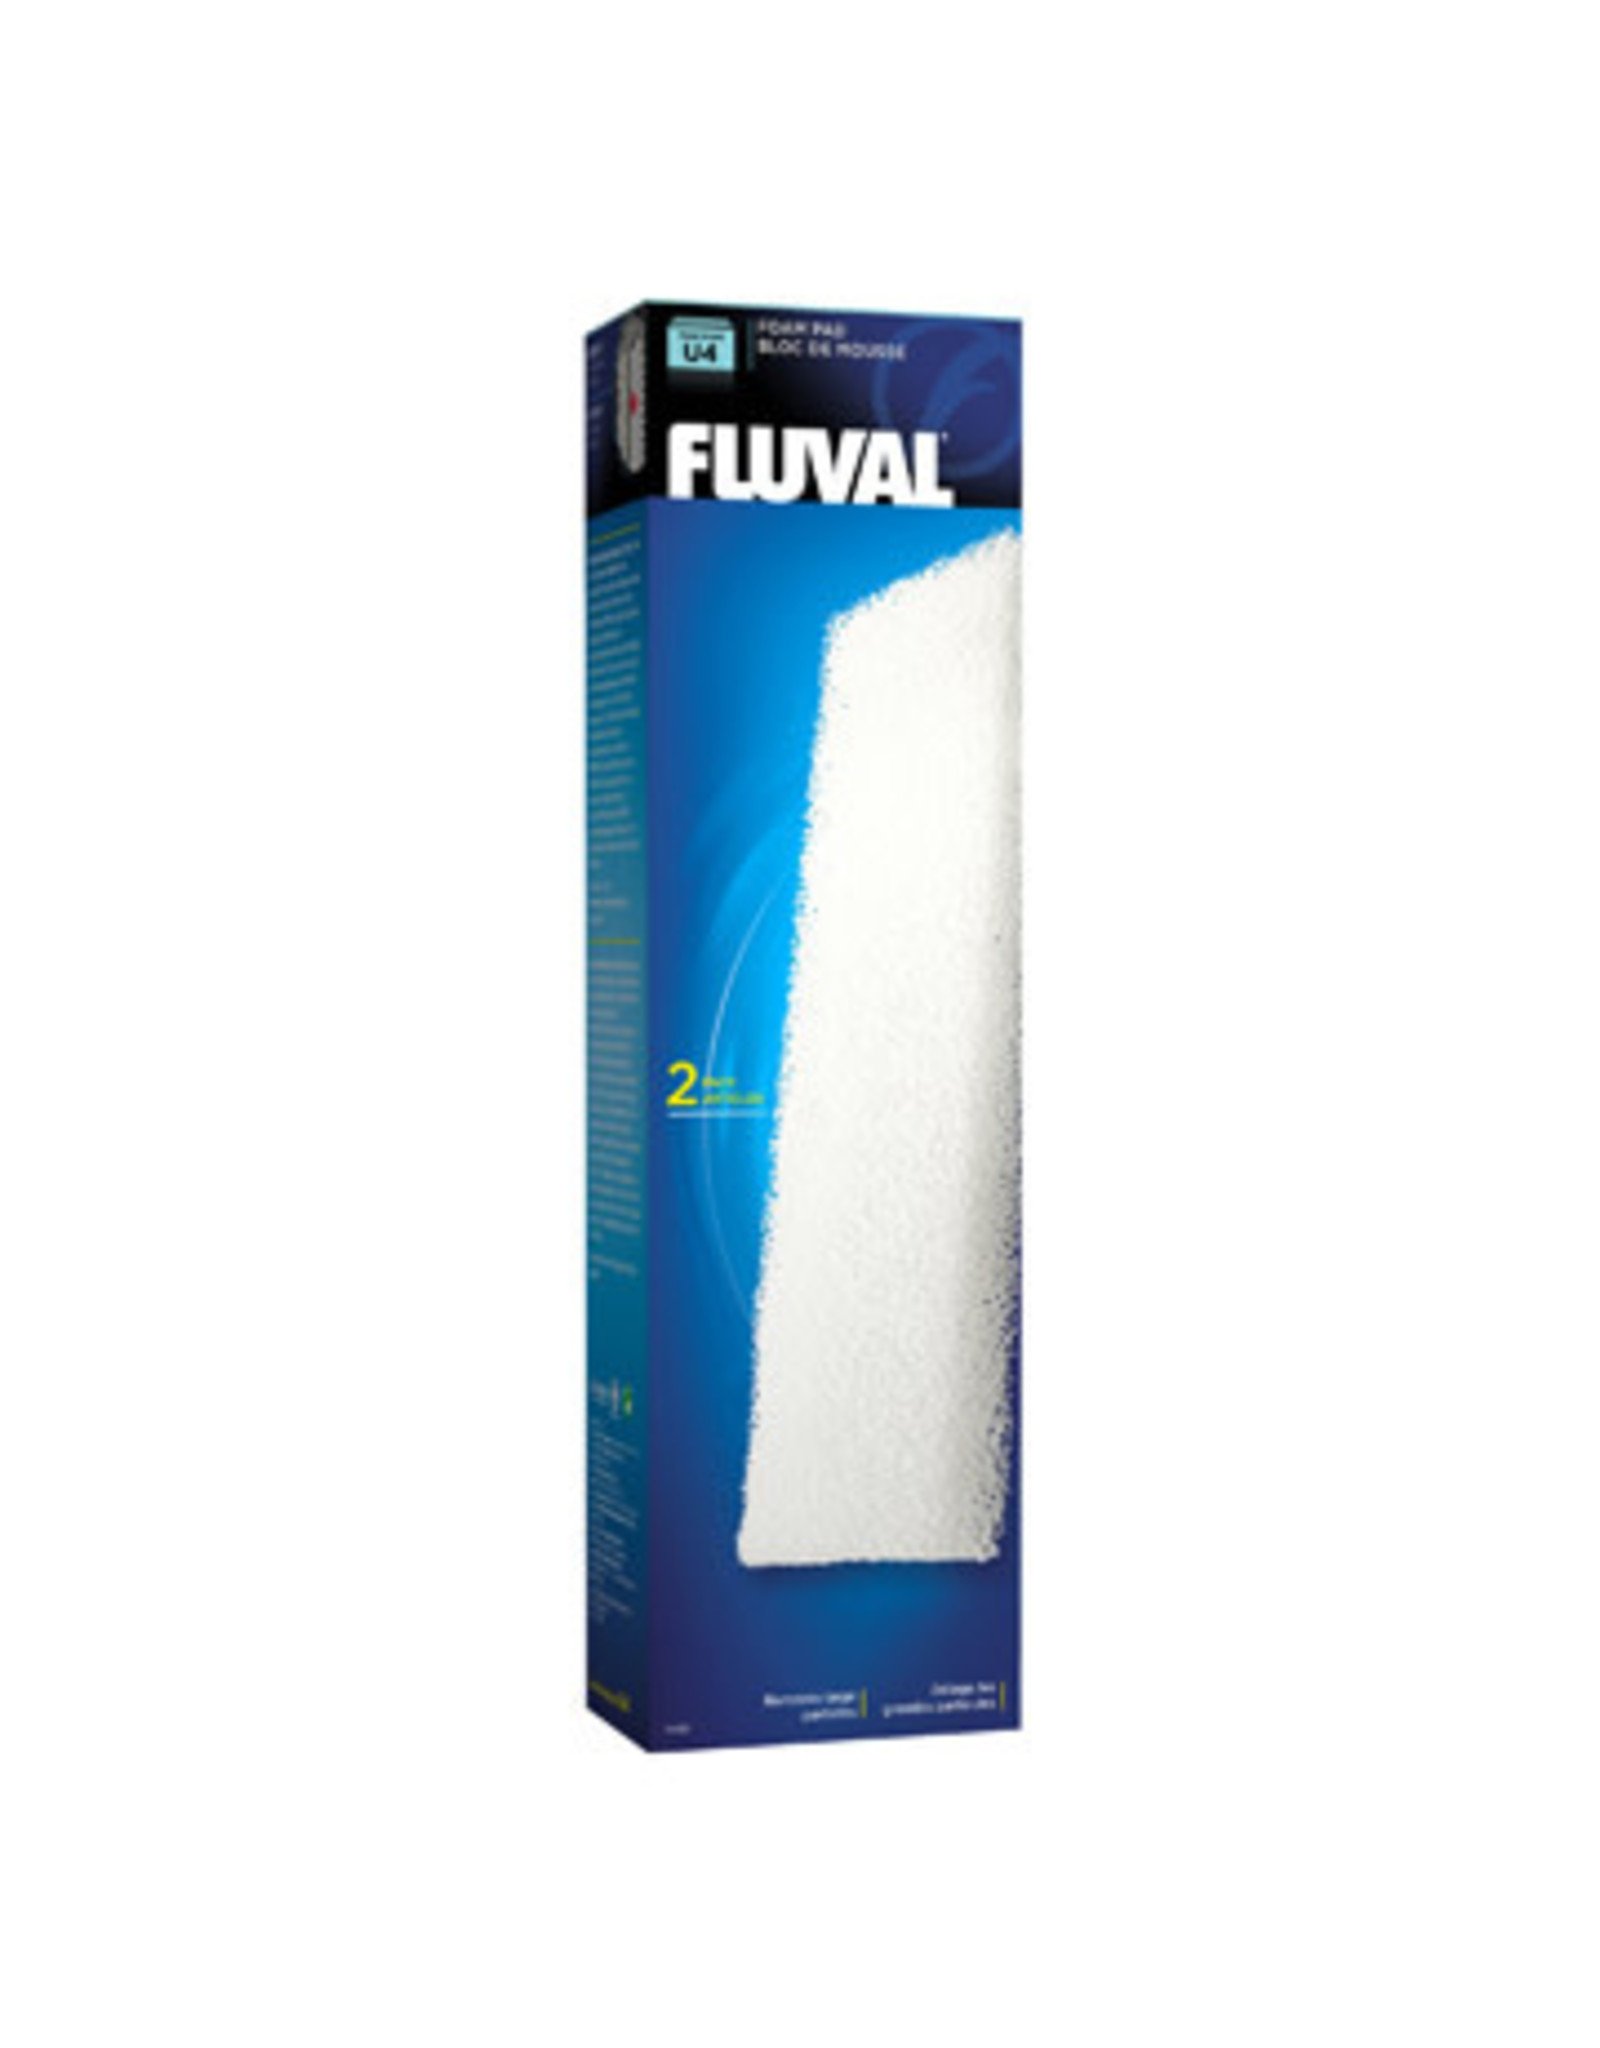 Fluval Fluval "U4" Foam Pad - 2 Pack